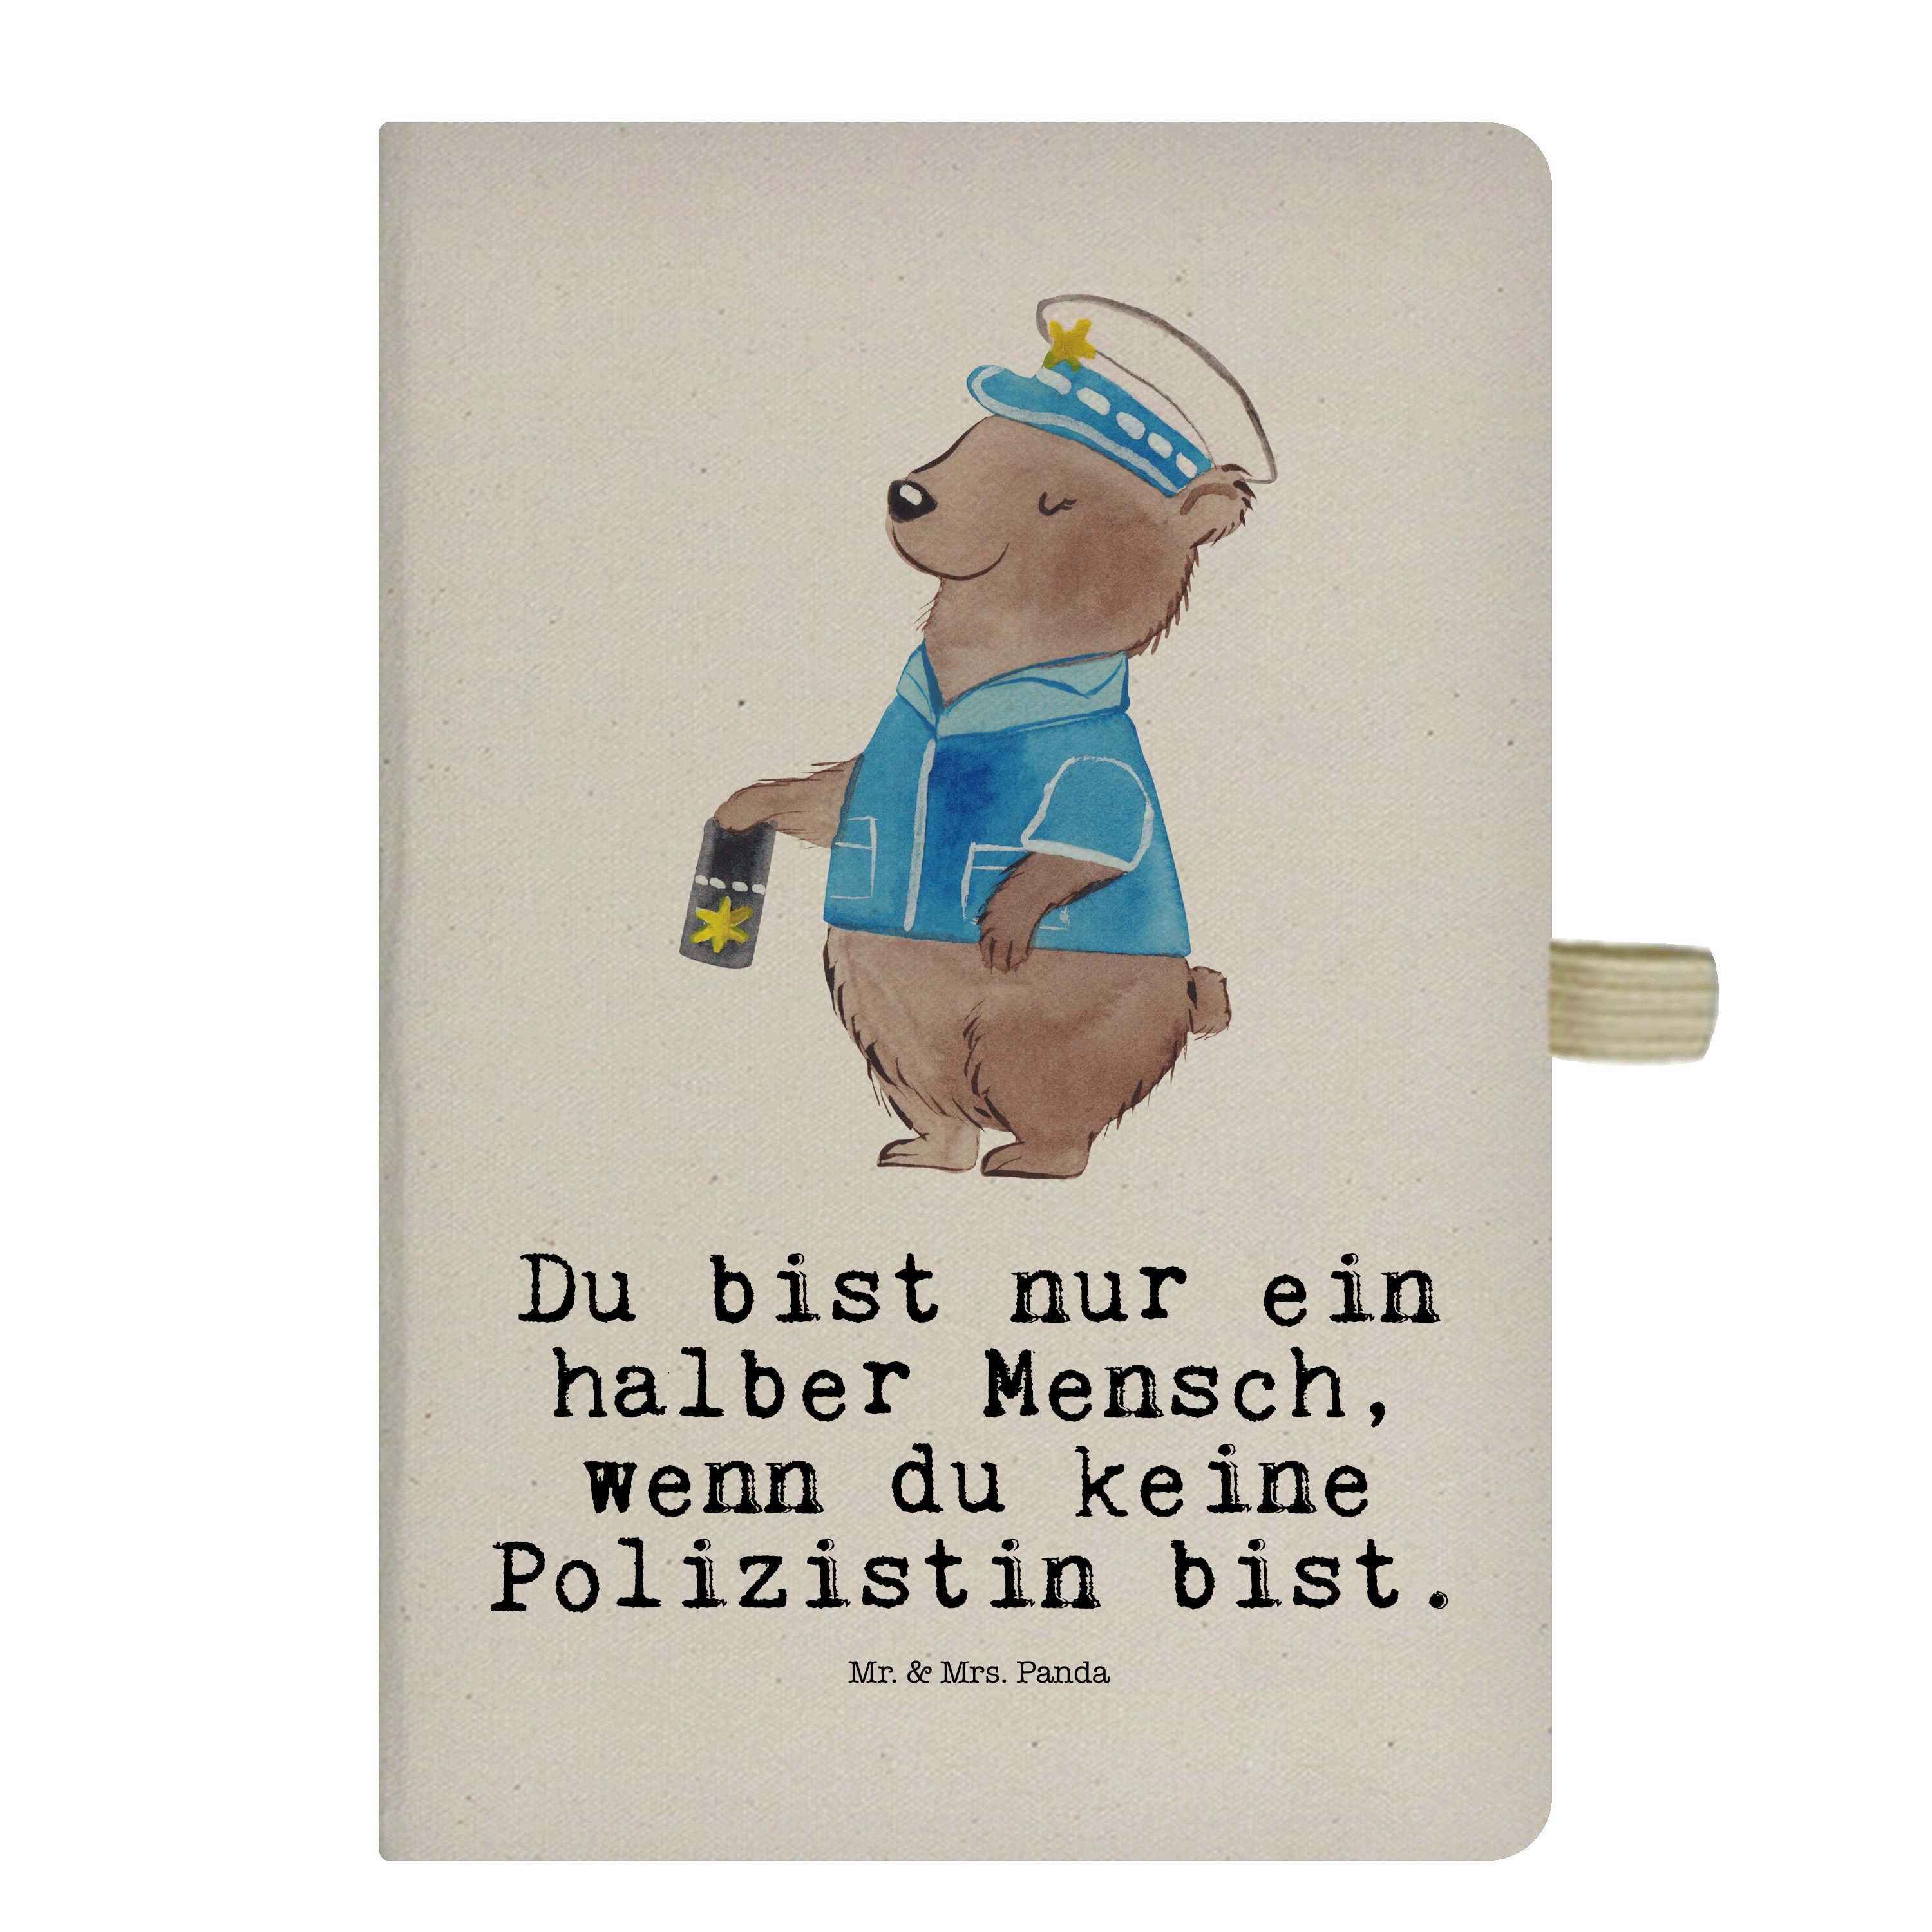 Mr. & Mrs. Panda Notizbuch Polizistin mit Herz - Transparent - Geschenk, Wachfrau, Skizzenbuch, Mr. & Mrs. Panda